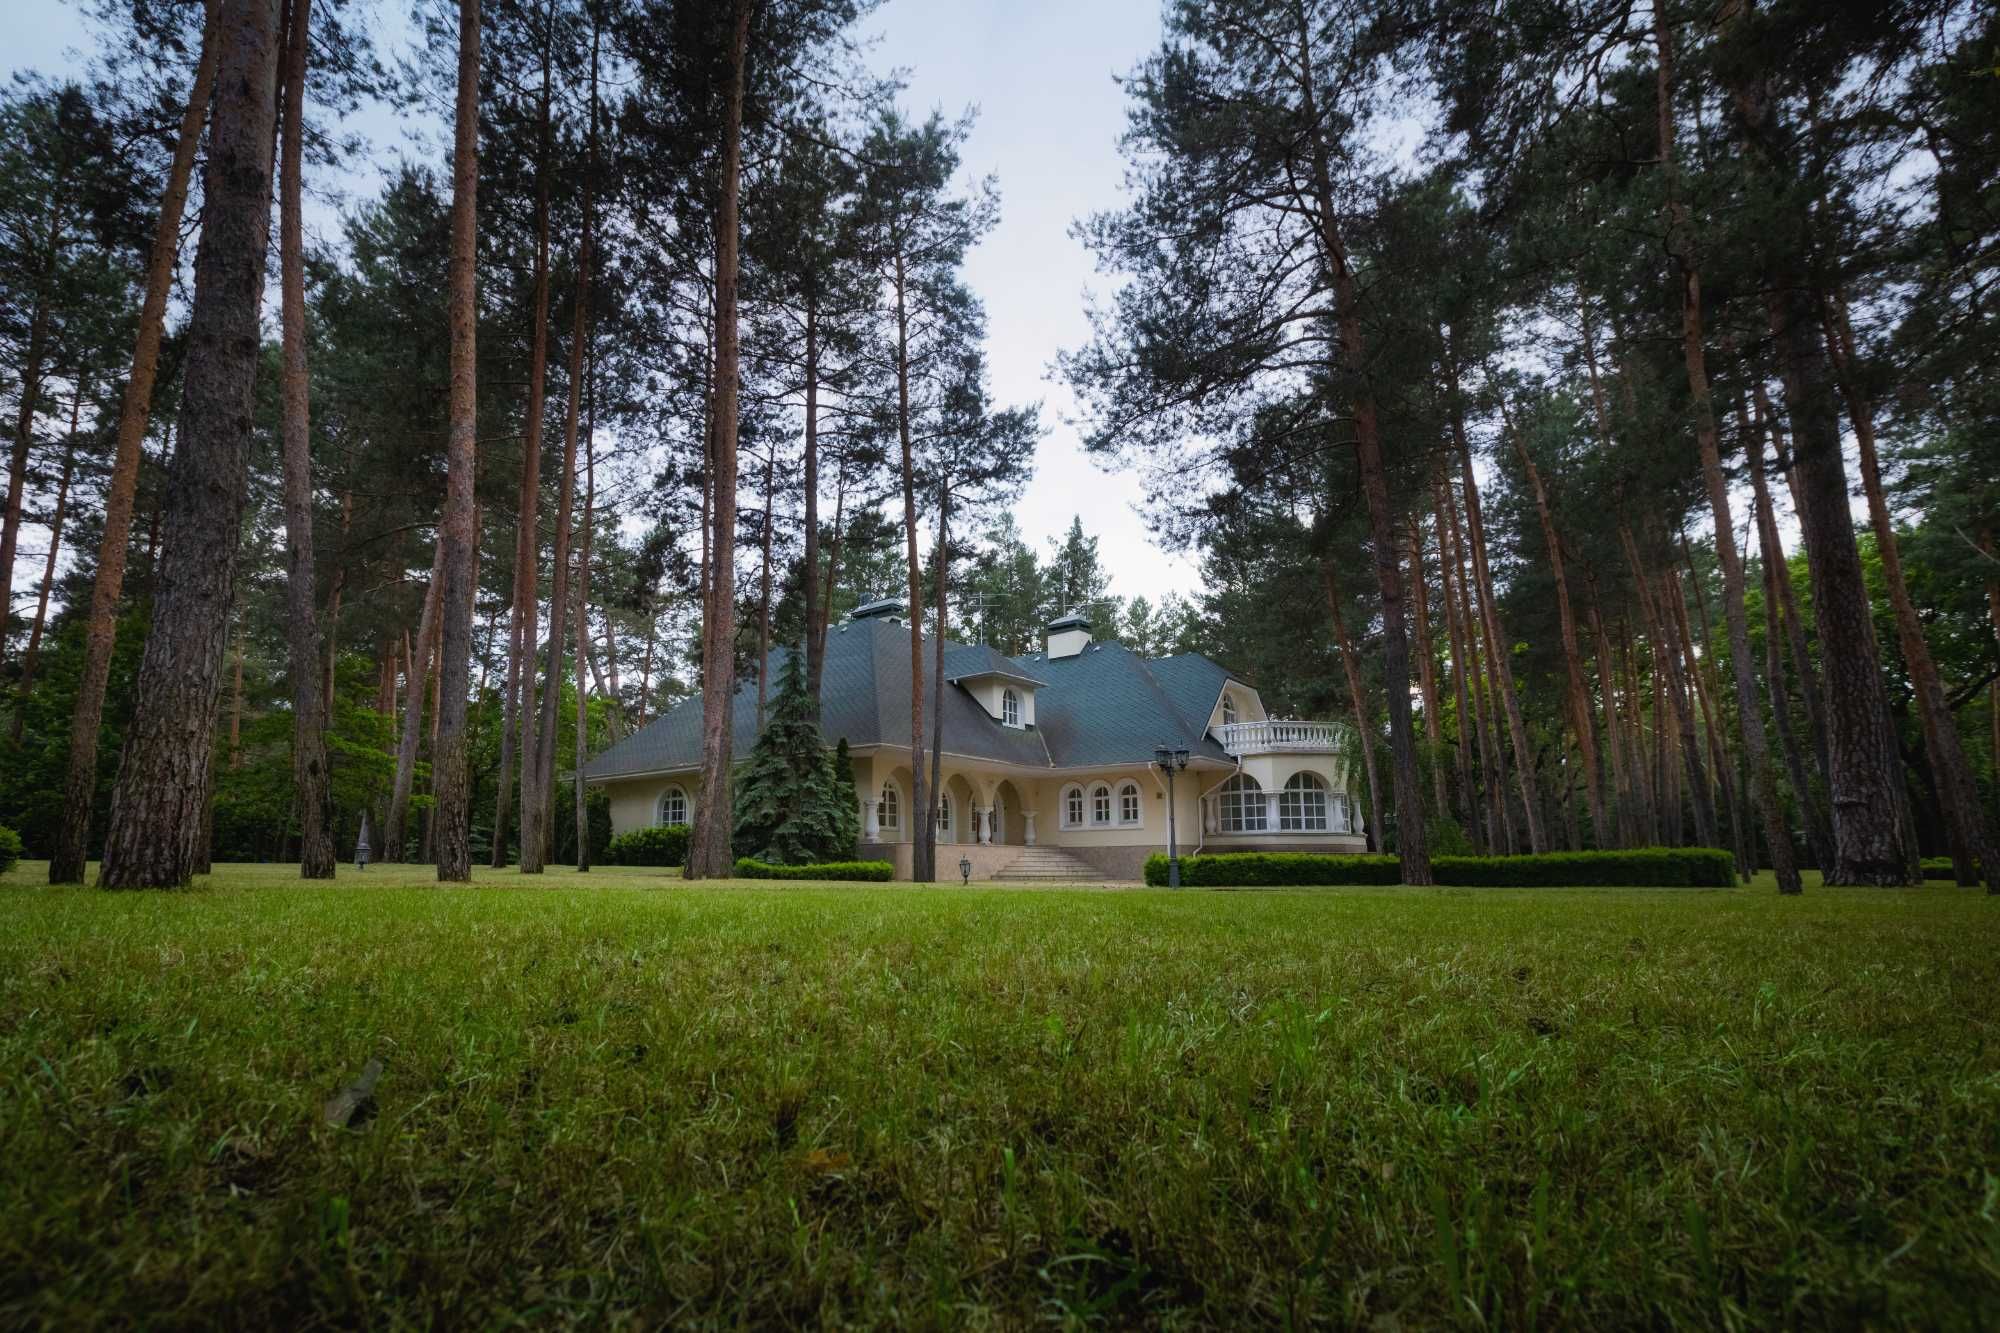 Продам дом, Пятихатки, Козин, в сосновом лесу,698 м, 120 соток